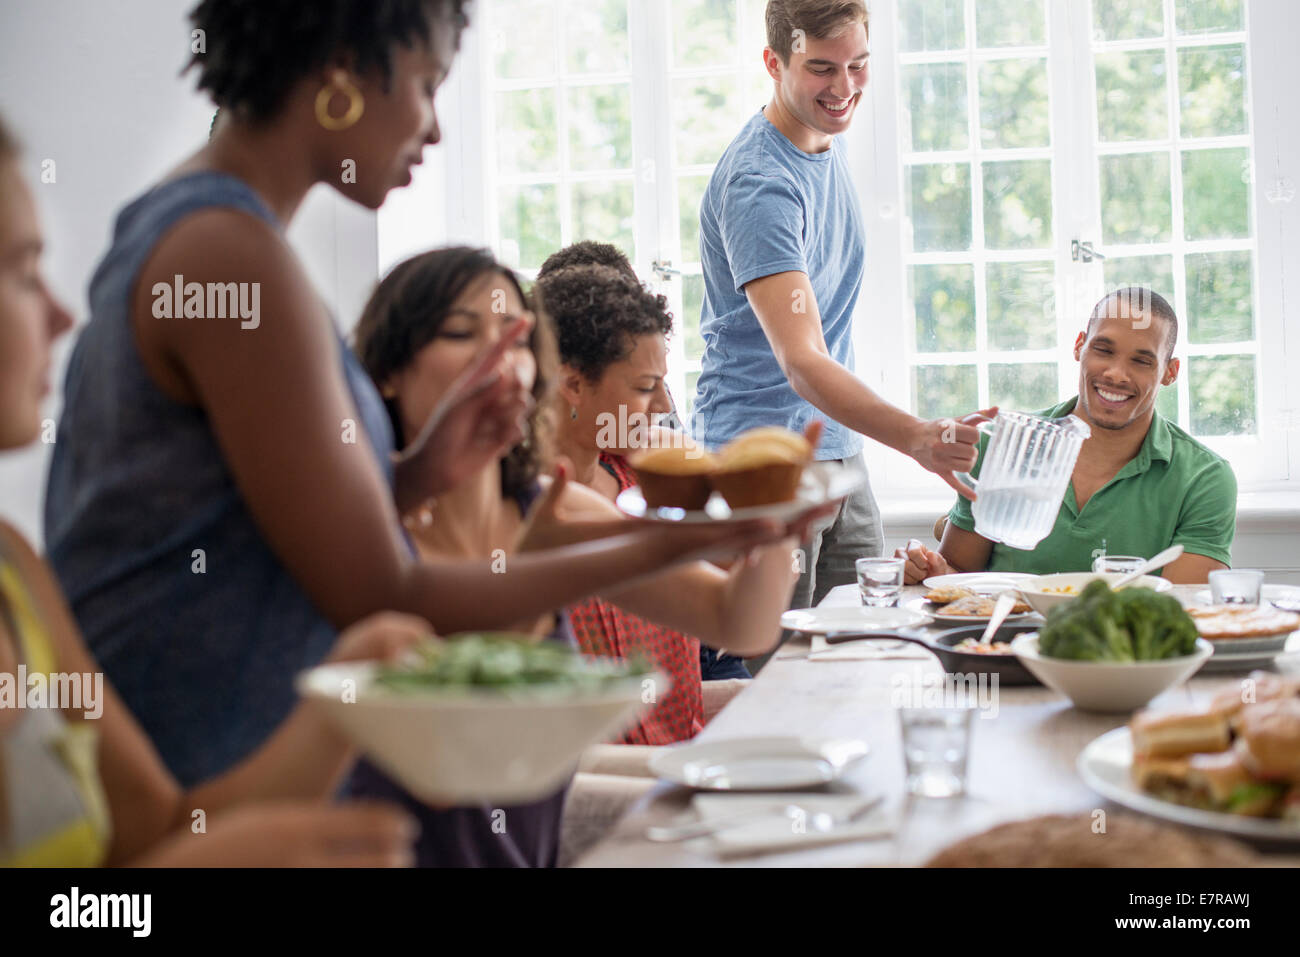 Ein Familientreffen, Männer, Frauen und Kinder um eine gemeinsame Mahlzeit Esstisch. Stockfoto